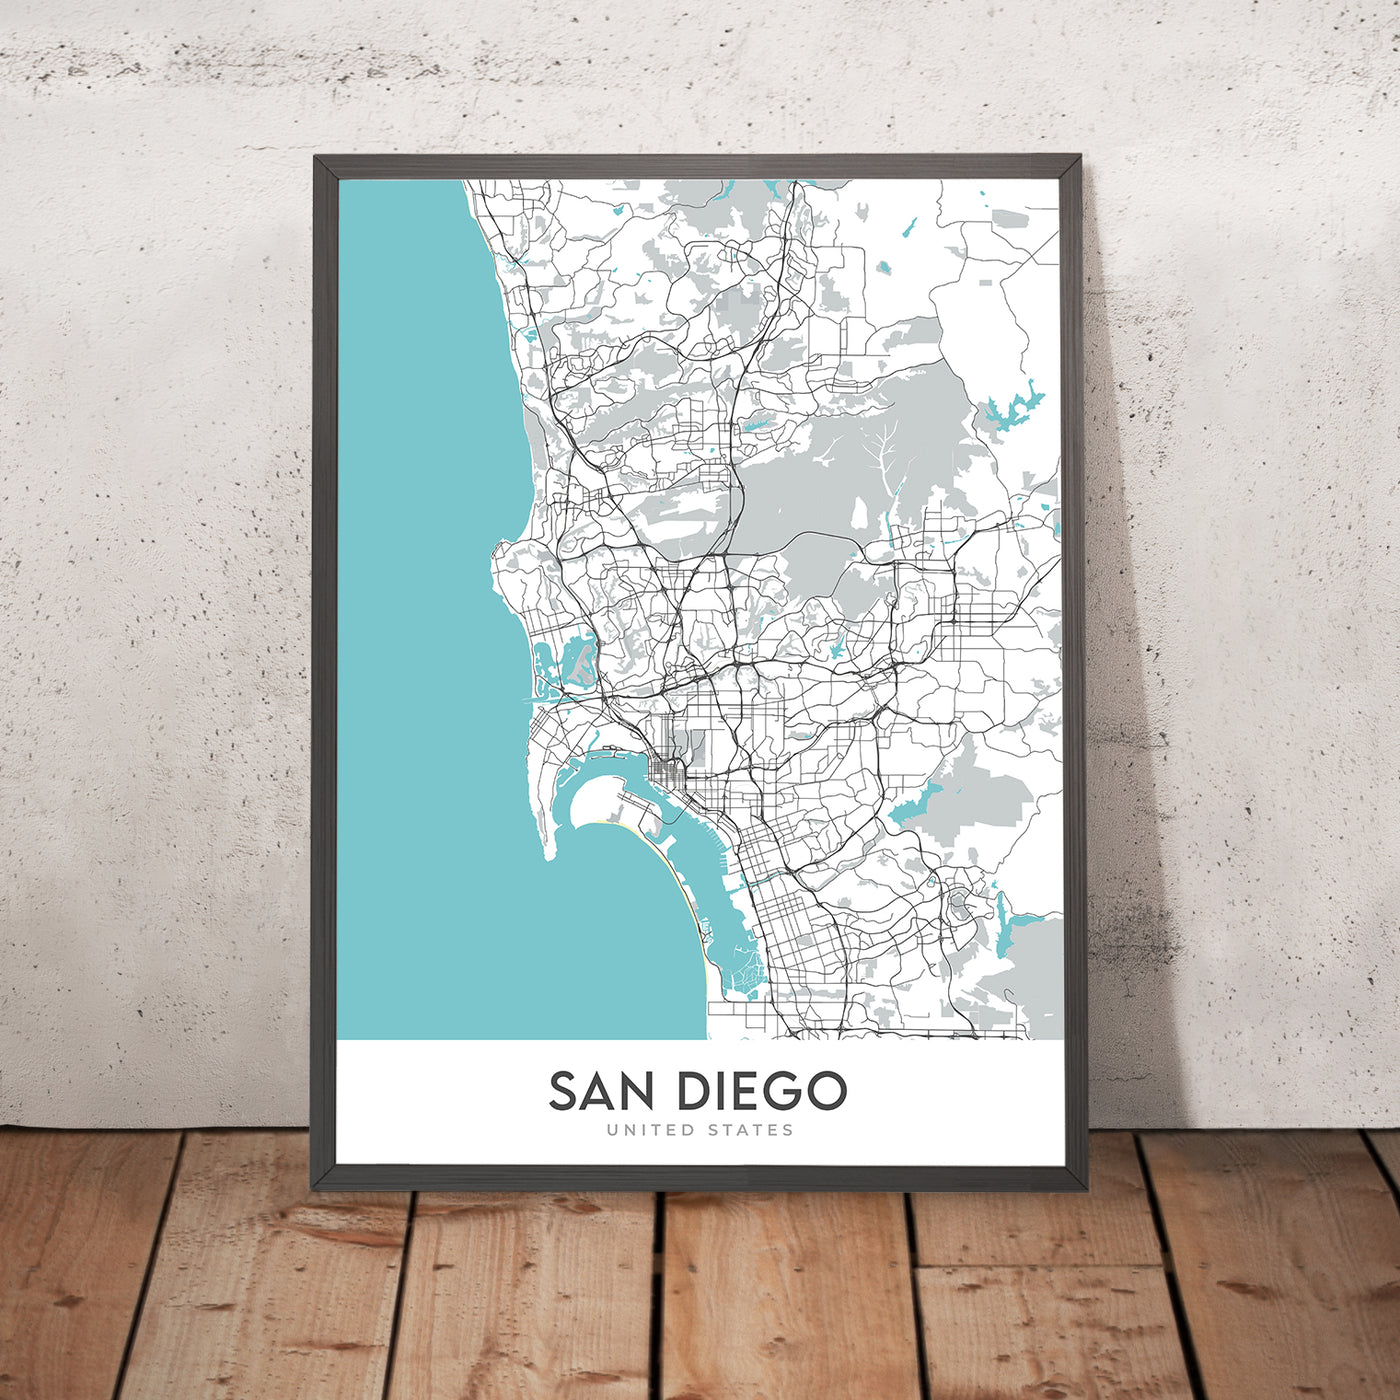 Plan de la ville moderne de San Diego, Californie : Balboa Park, Gaslamp Quarter, La Jolla, Mission Beach, Pacific Beach